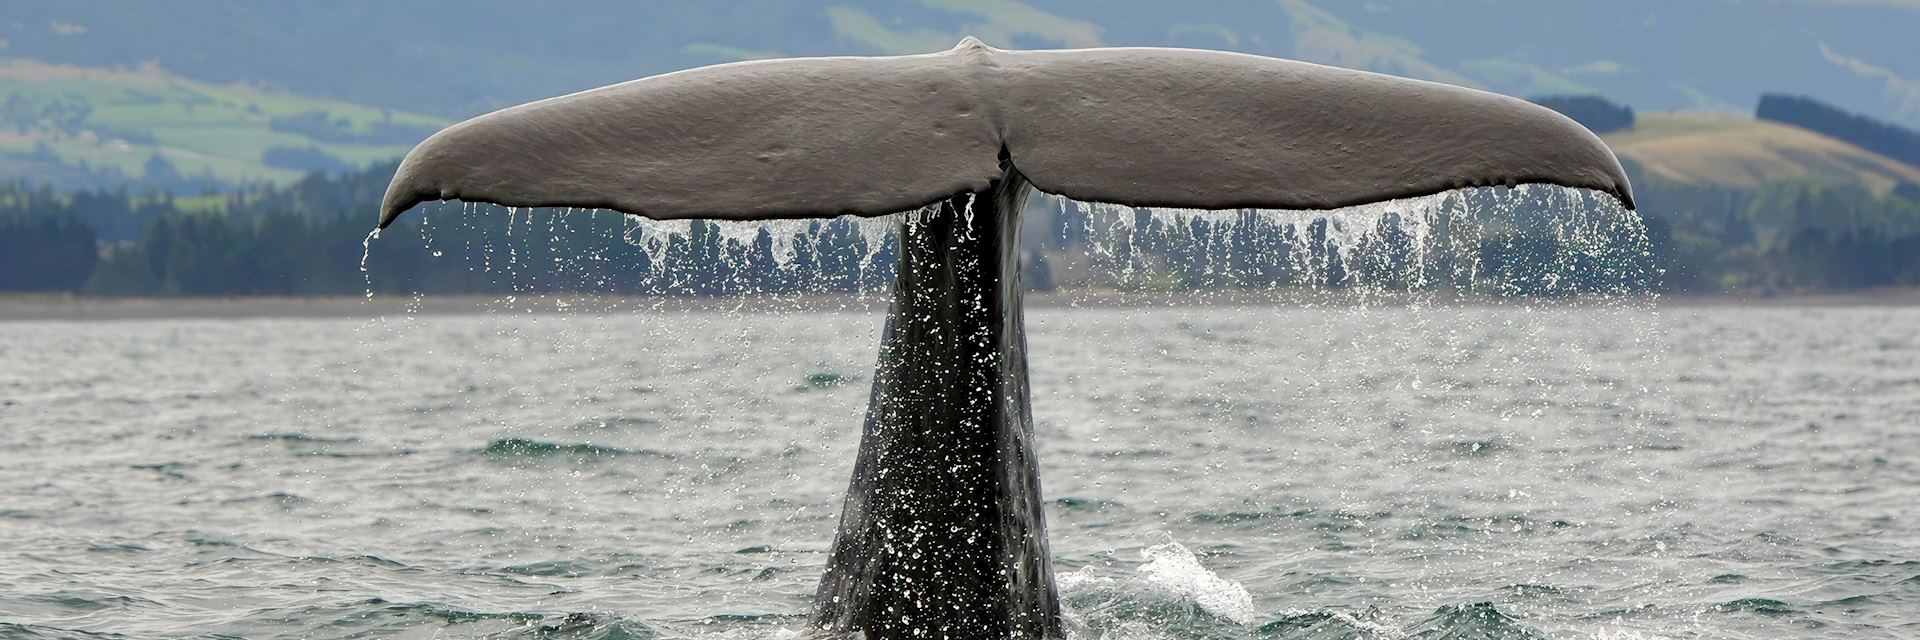 Sperm whale, Kaikoura